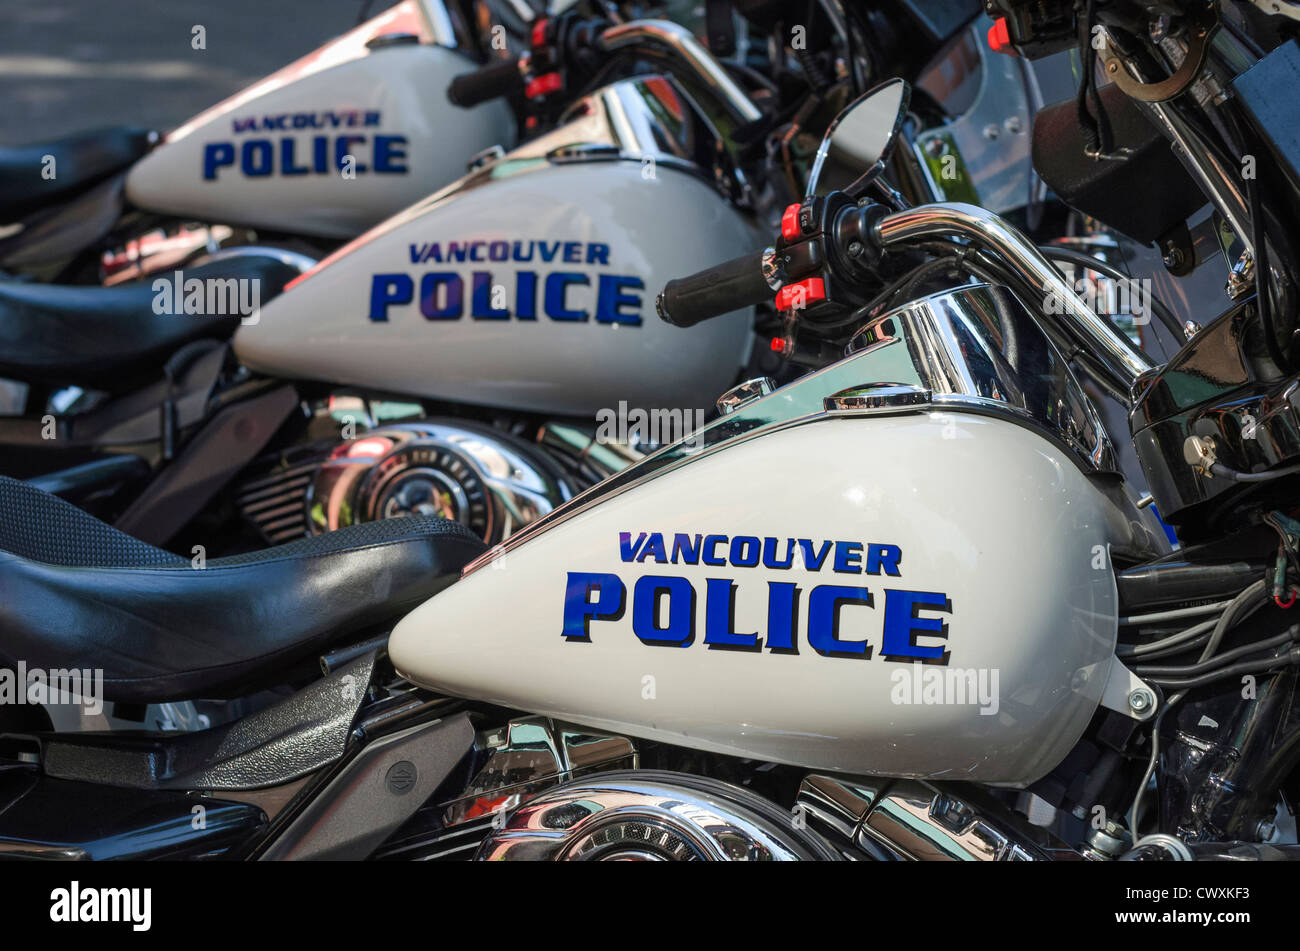 Les motos de police de Vancouver - Harley Davidsons. Banque D'Images